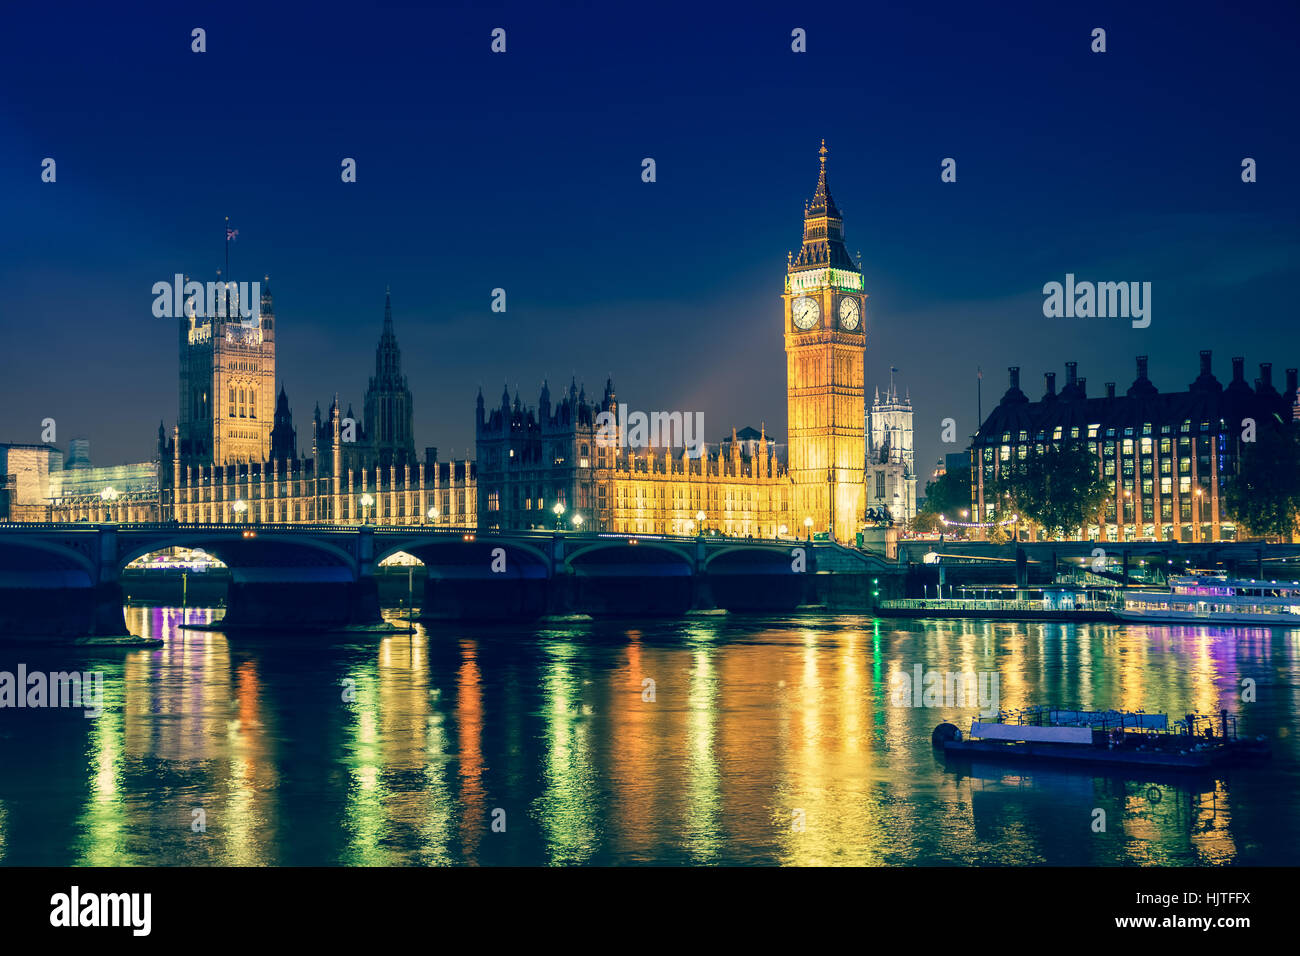 Vista iconica Westminster con il Big Ben, la Casa del Parlamento e il Tamigi a Victoria Embankment illuminata di notte. Foto Stock